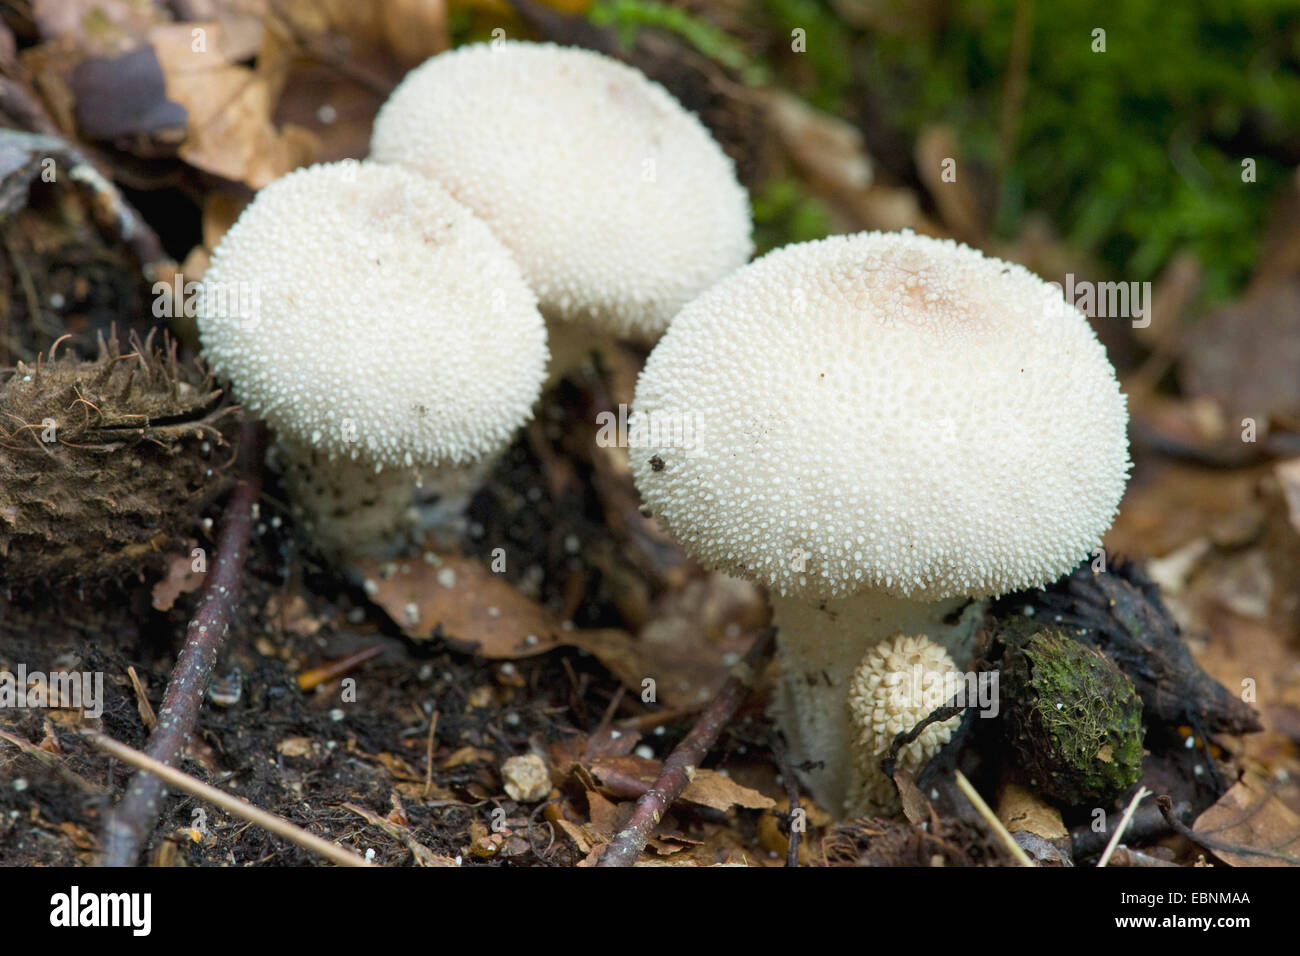 pestle puffball (Calvatia excipuliformis, Calvatia saccata), three fruiting bodies on forest floor, Germany Stock Photo